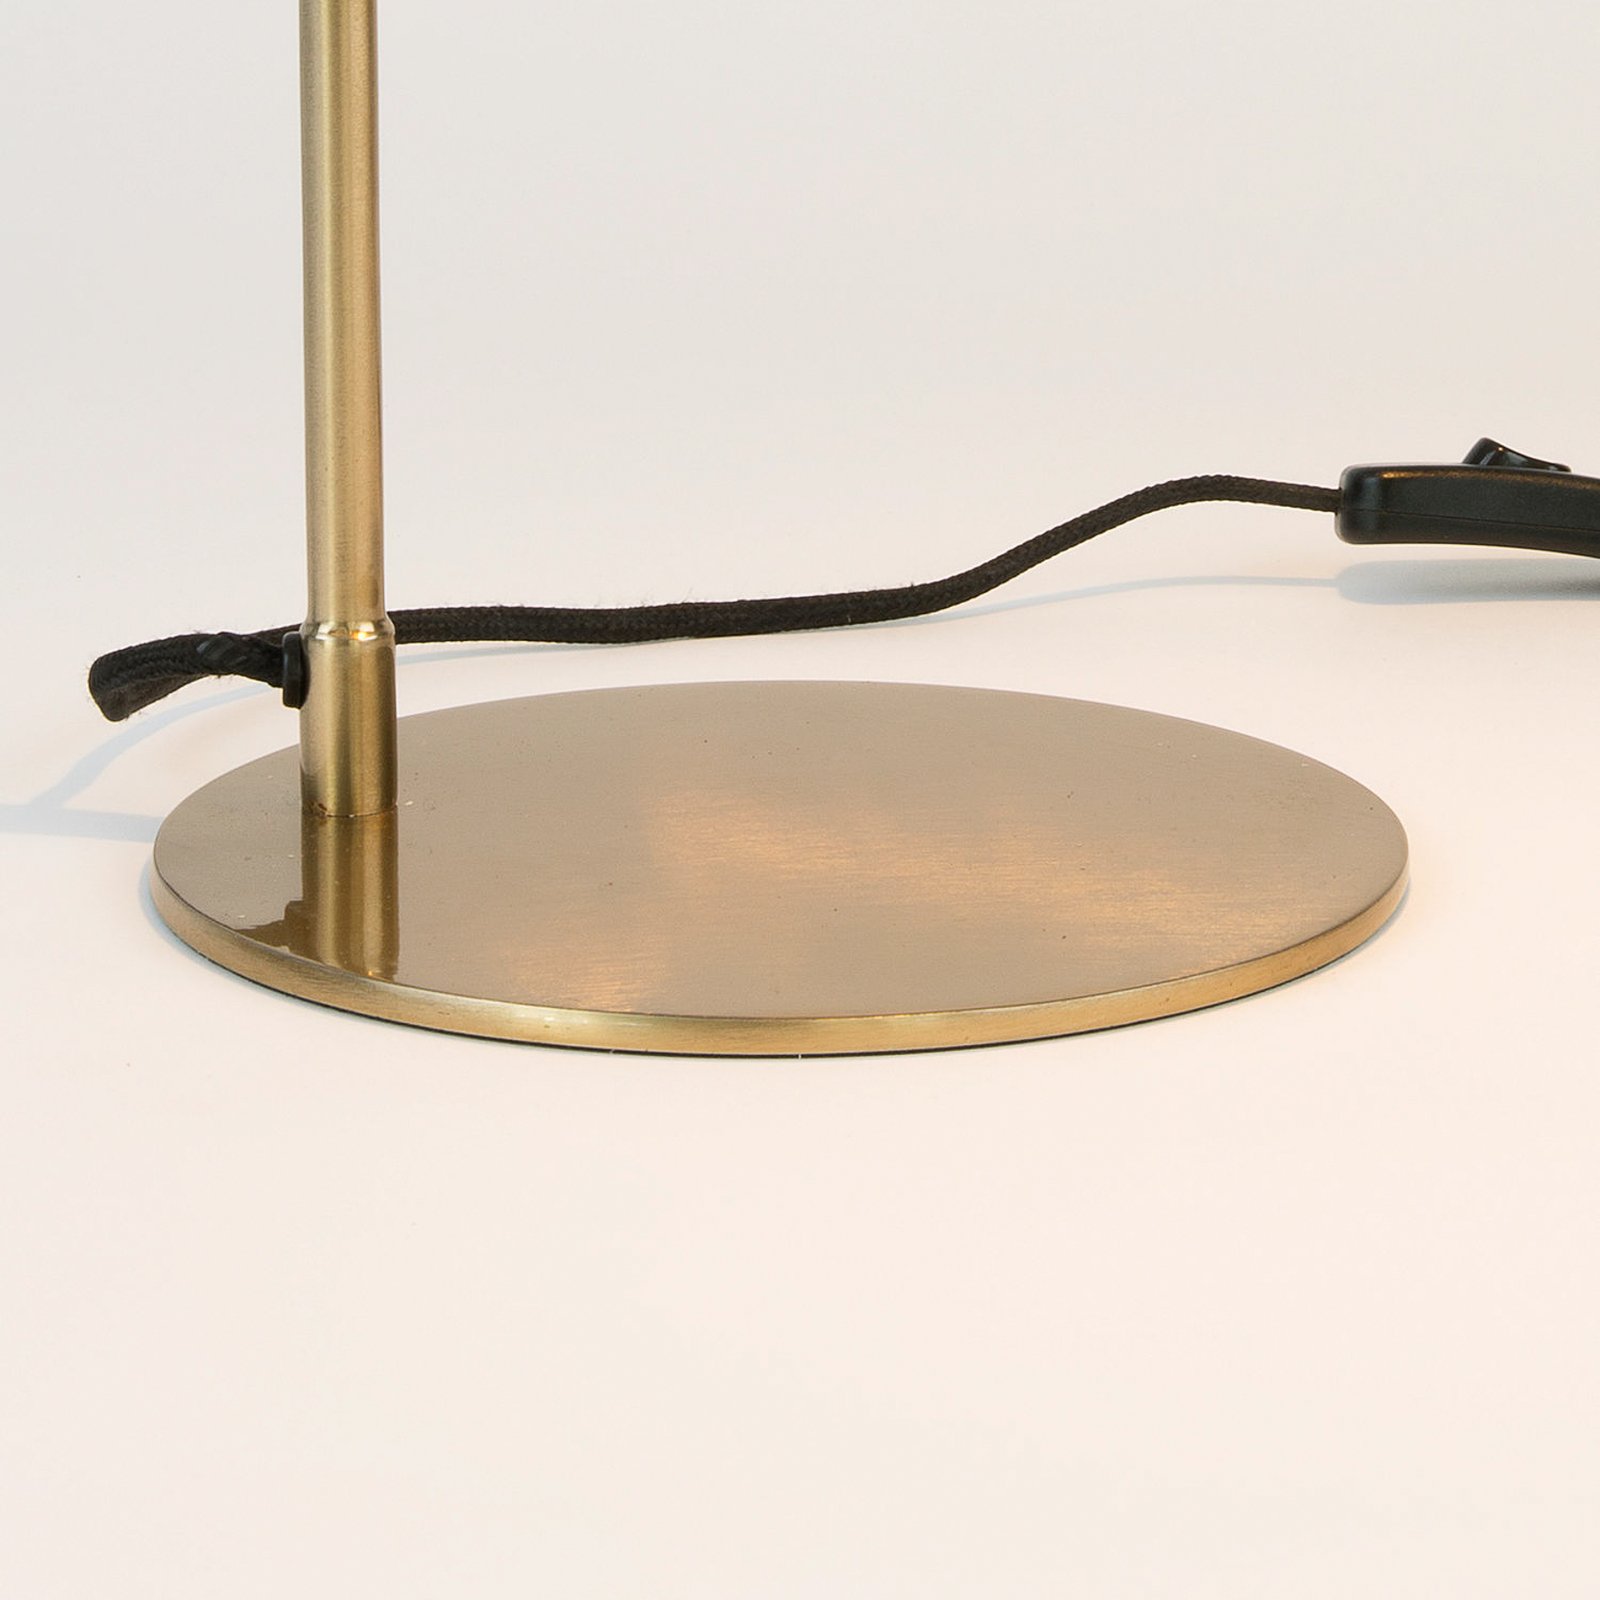 Miro stolna lampa, zlatne boje, visina 58 cm, željezo/mesing